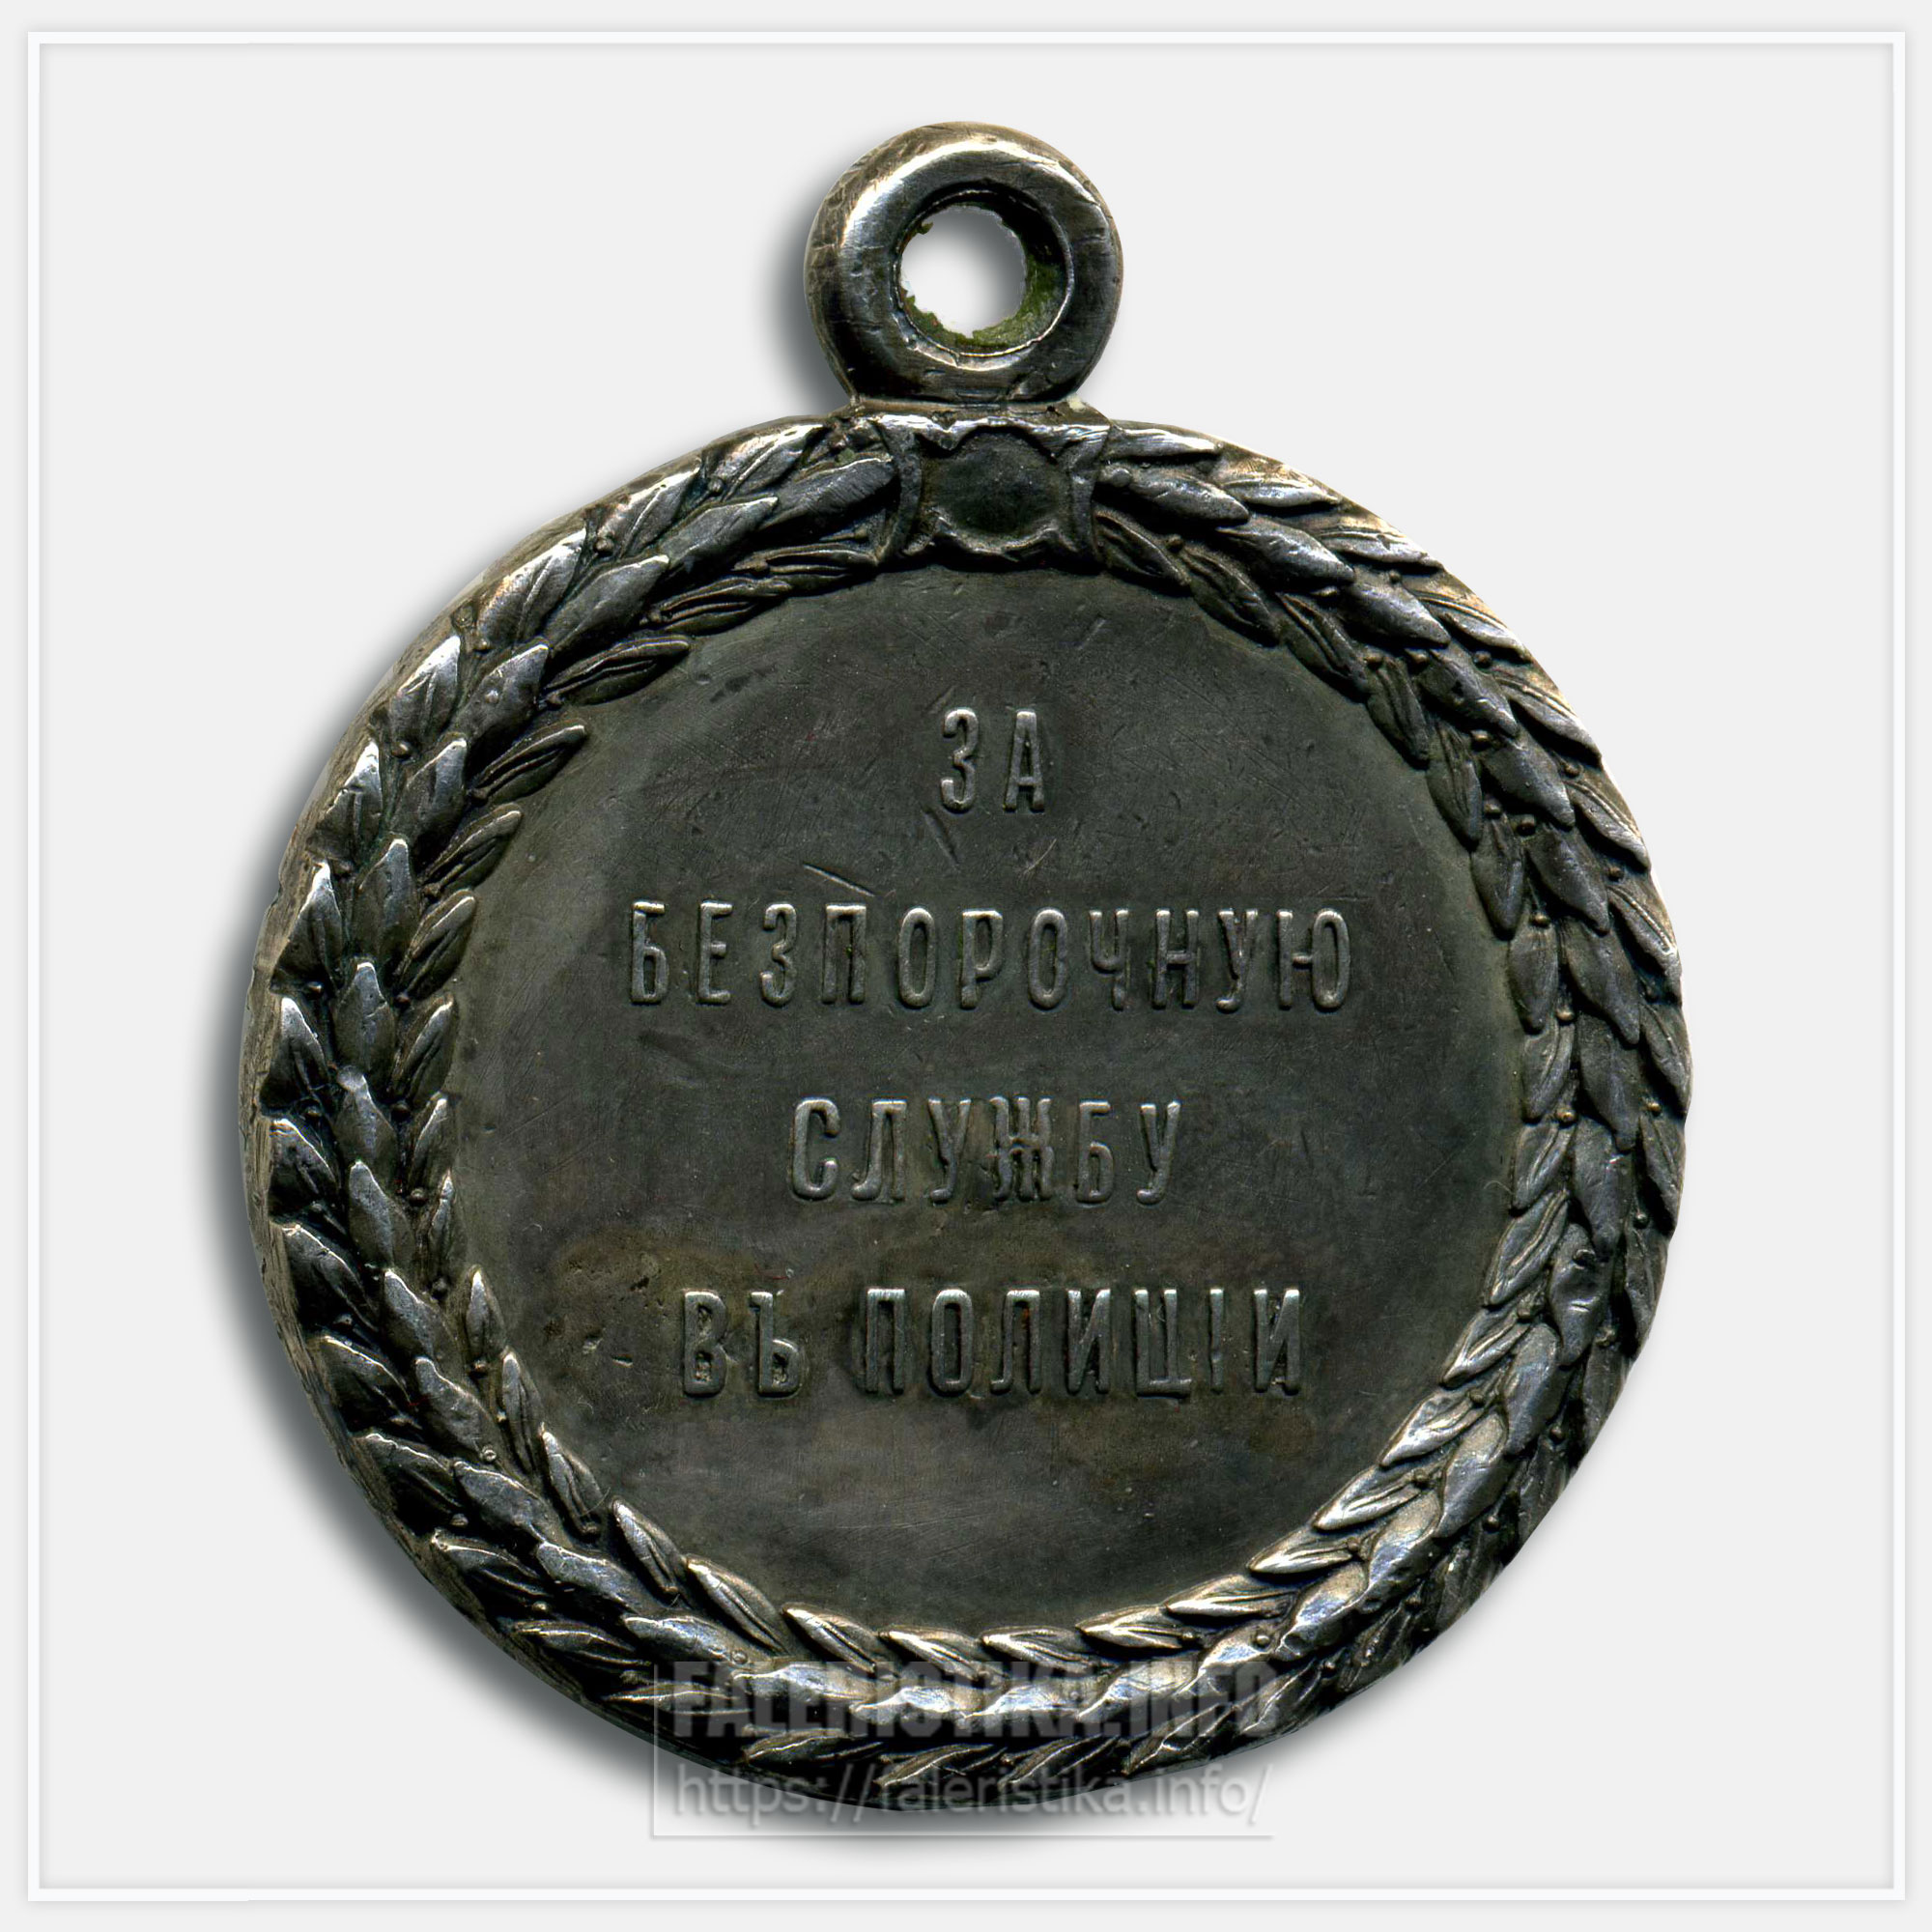 Медаль "За беспорочную службу в полиции" Александр III